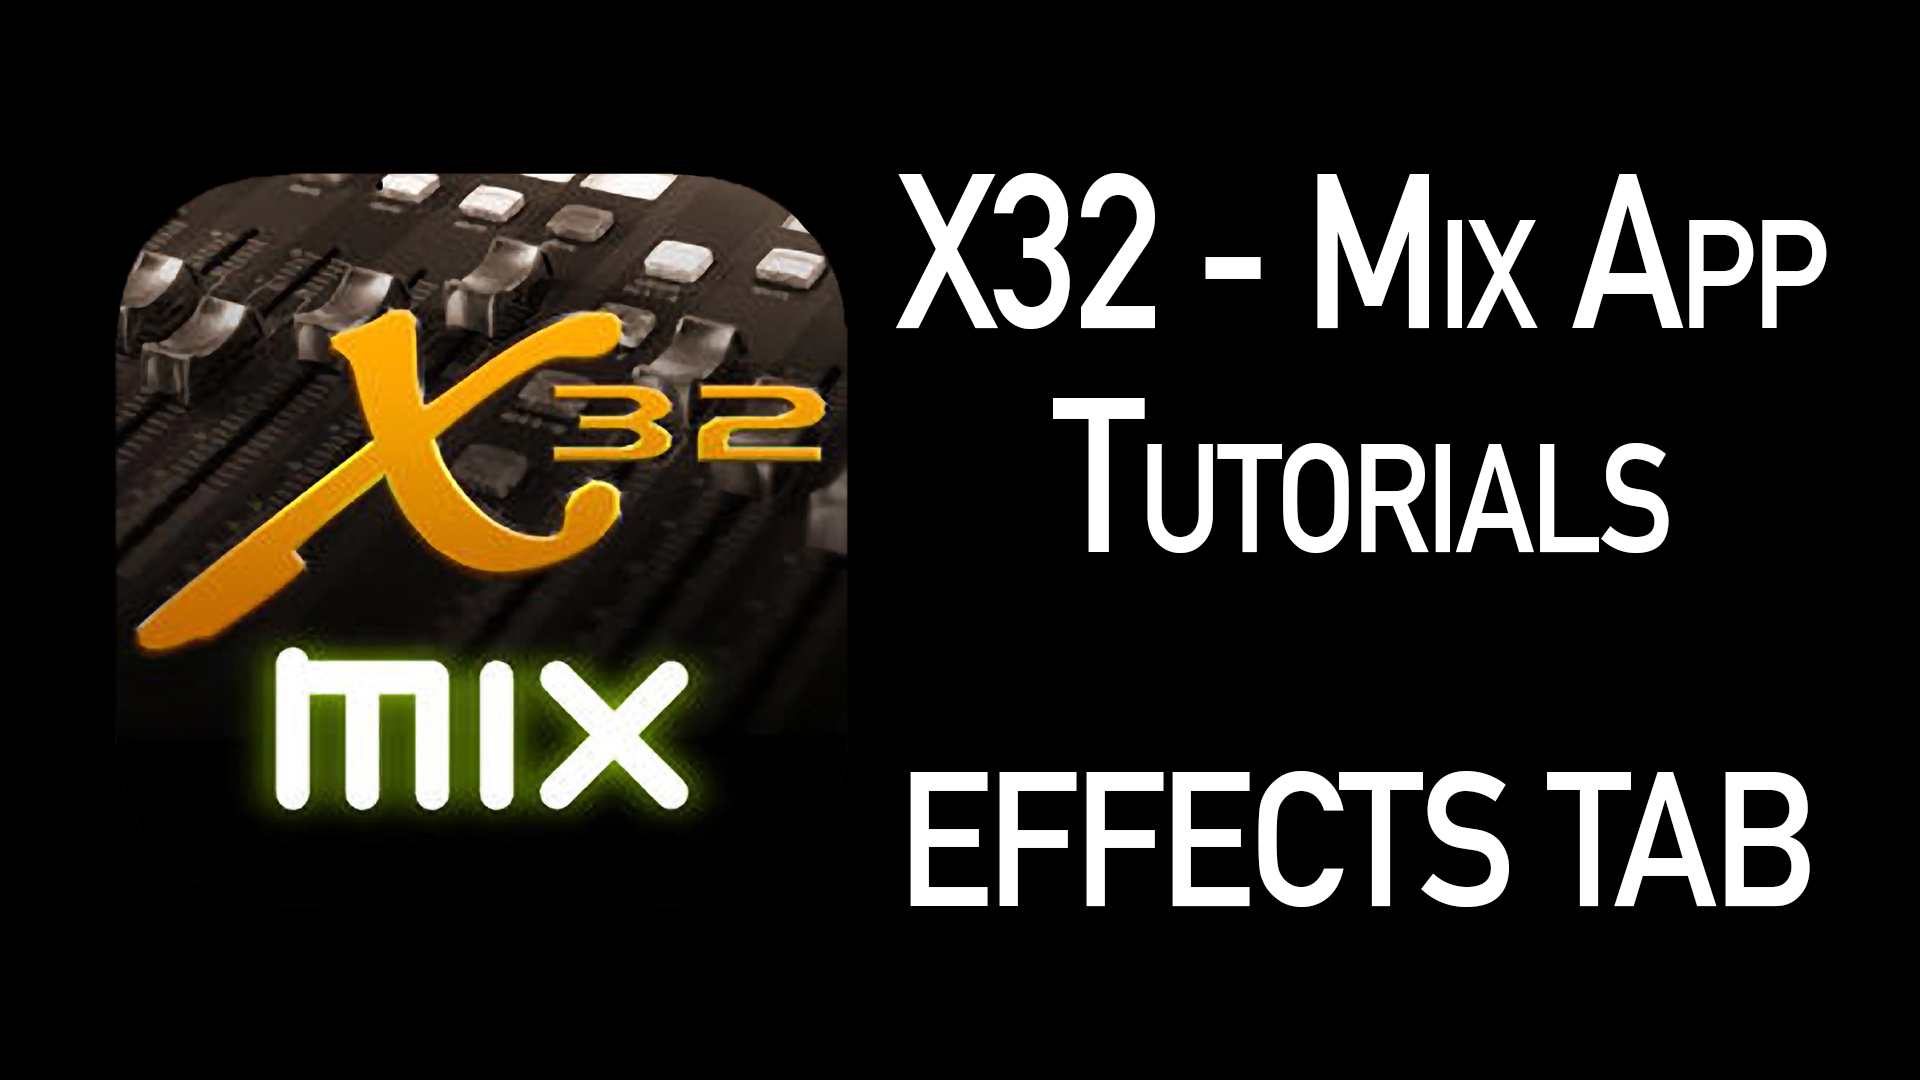 X32-Mix App Tutorial Detail Tab